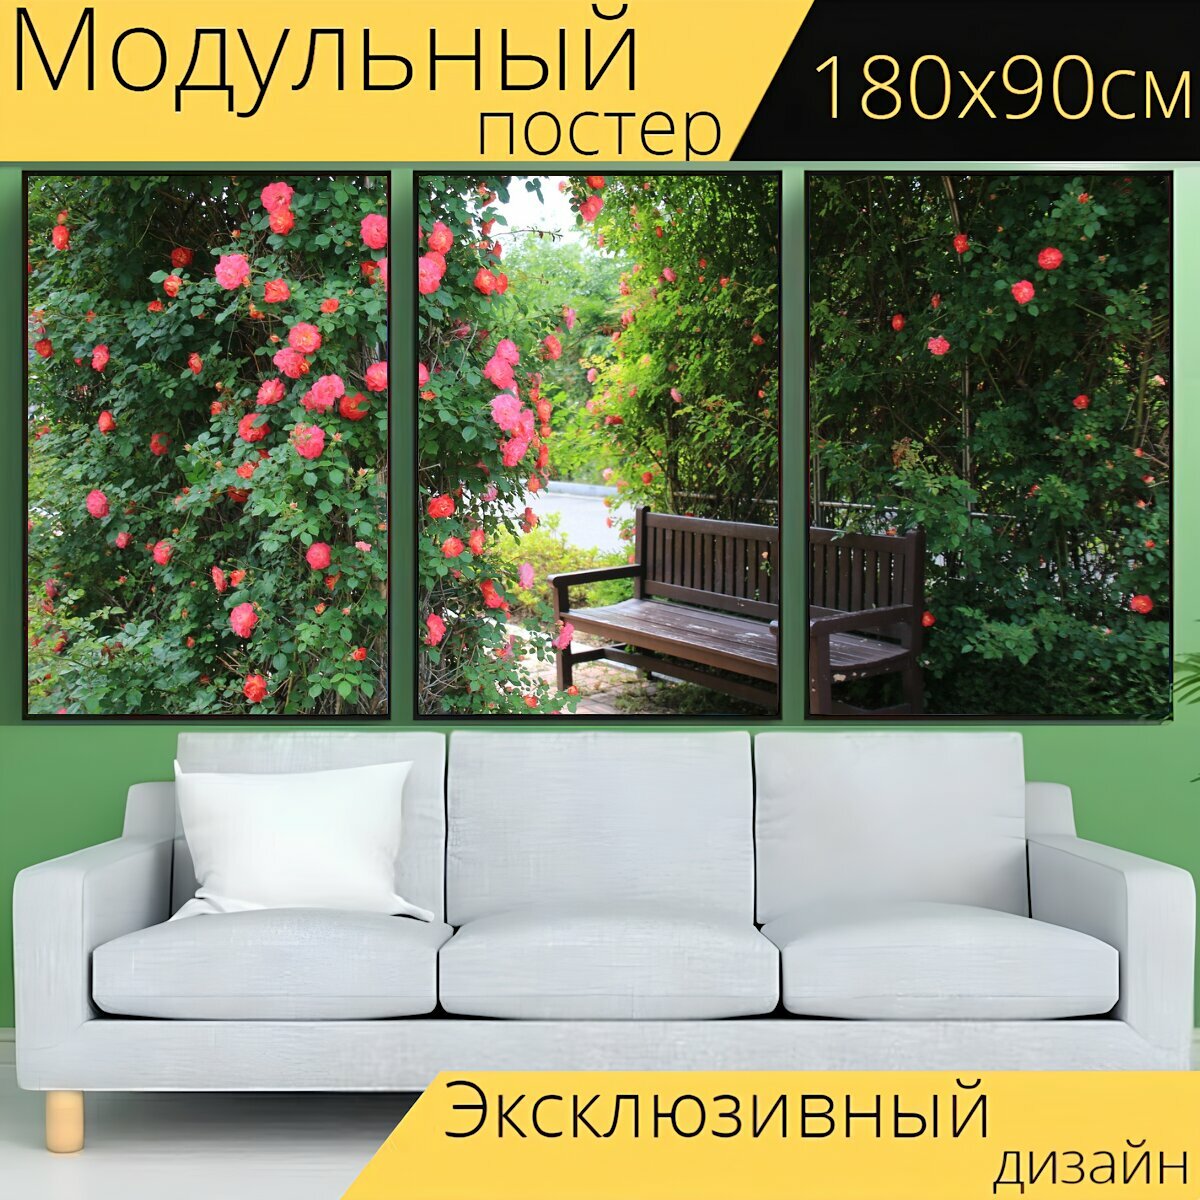 Модульный постер "Цветы, скамейка, природа" 180 x 90 см. для интерьера